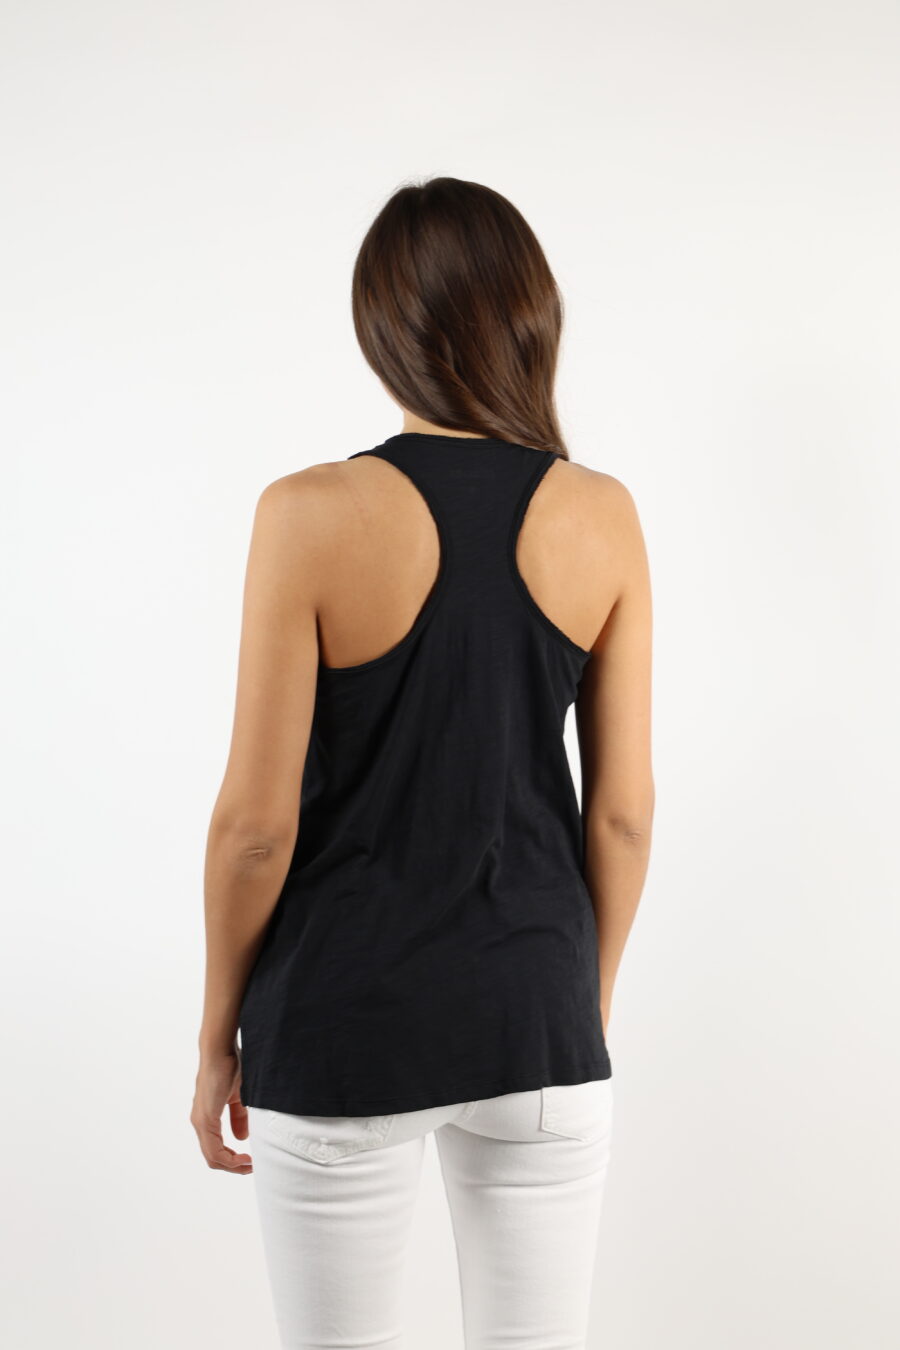 Camiseta negra sin mangas con maxilogo "strass" - 110608